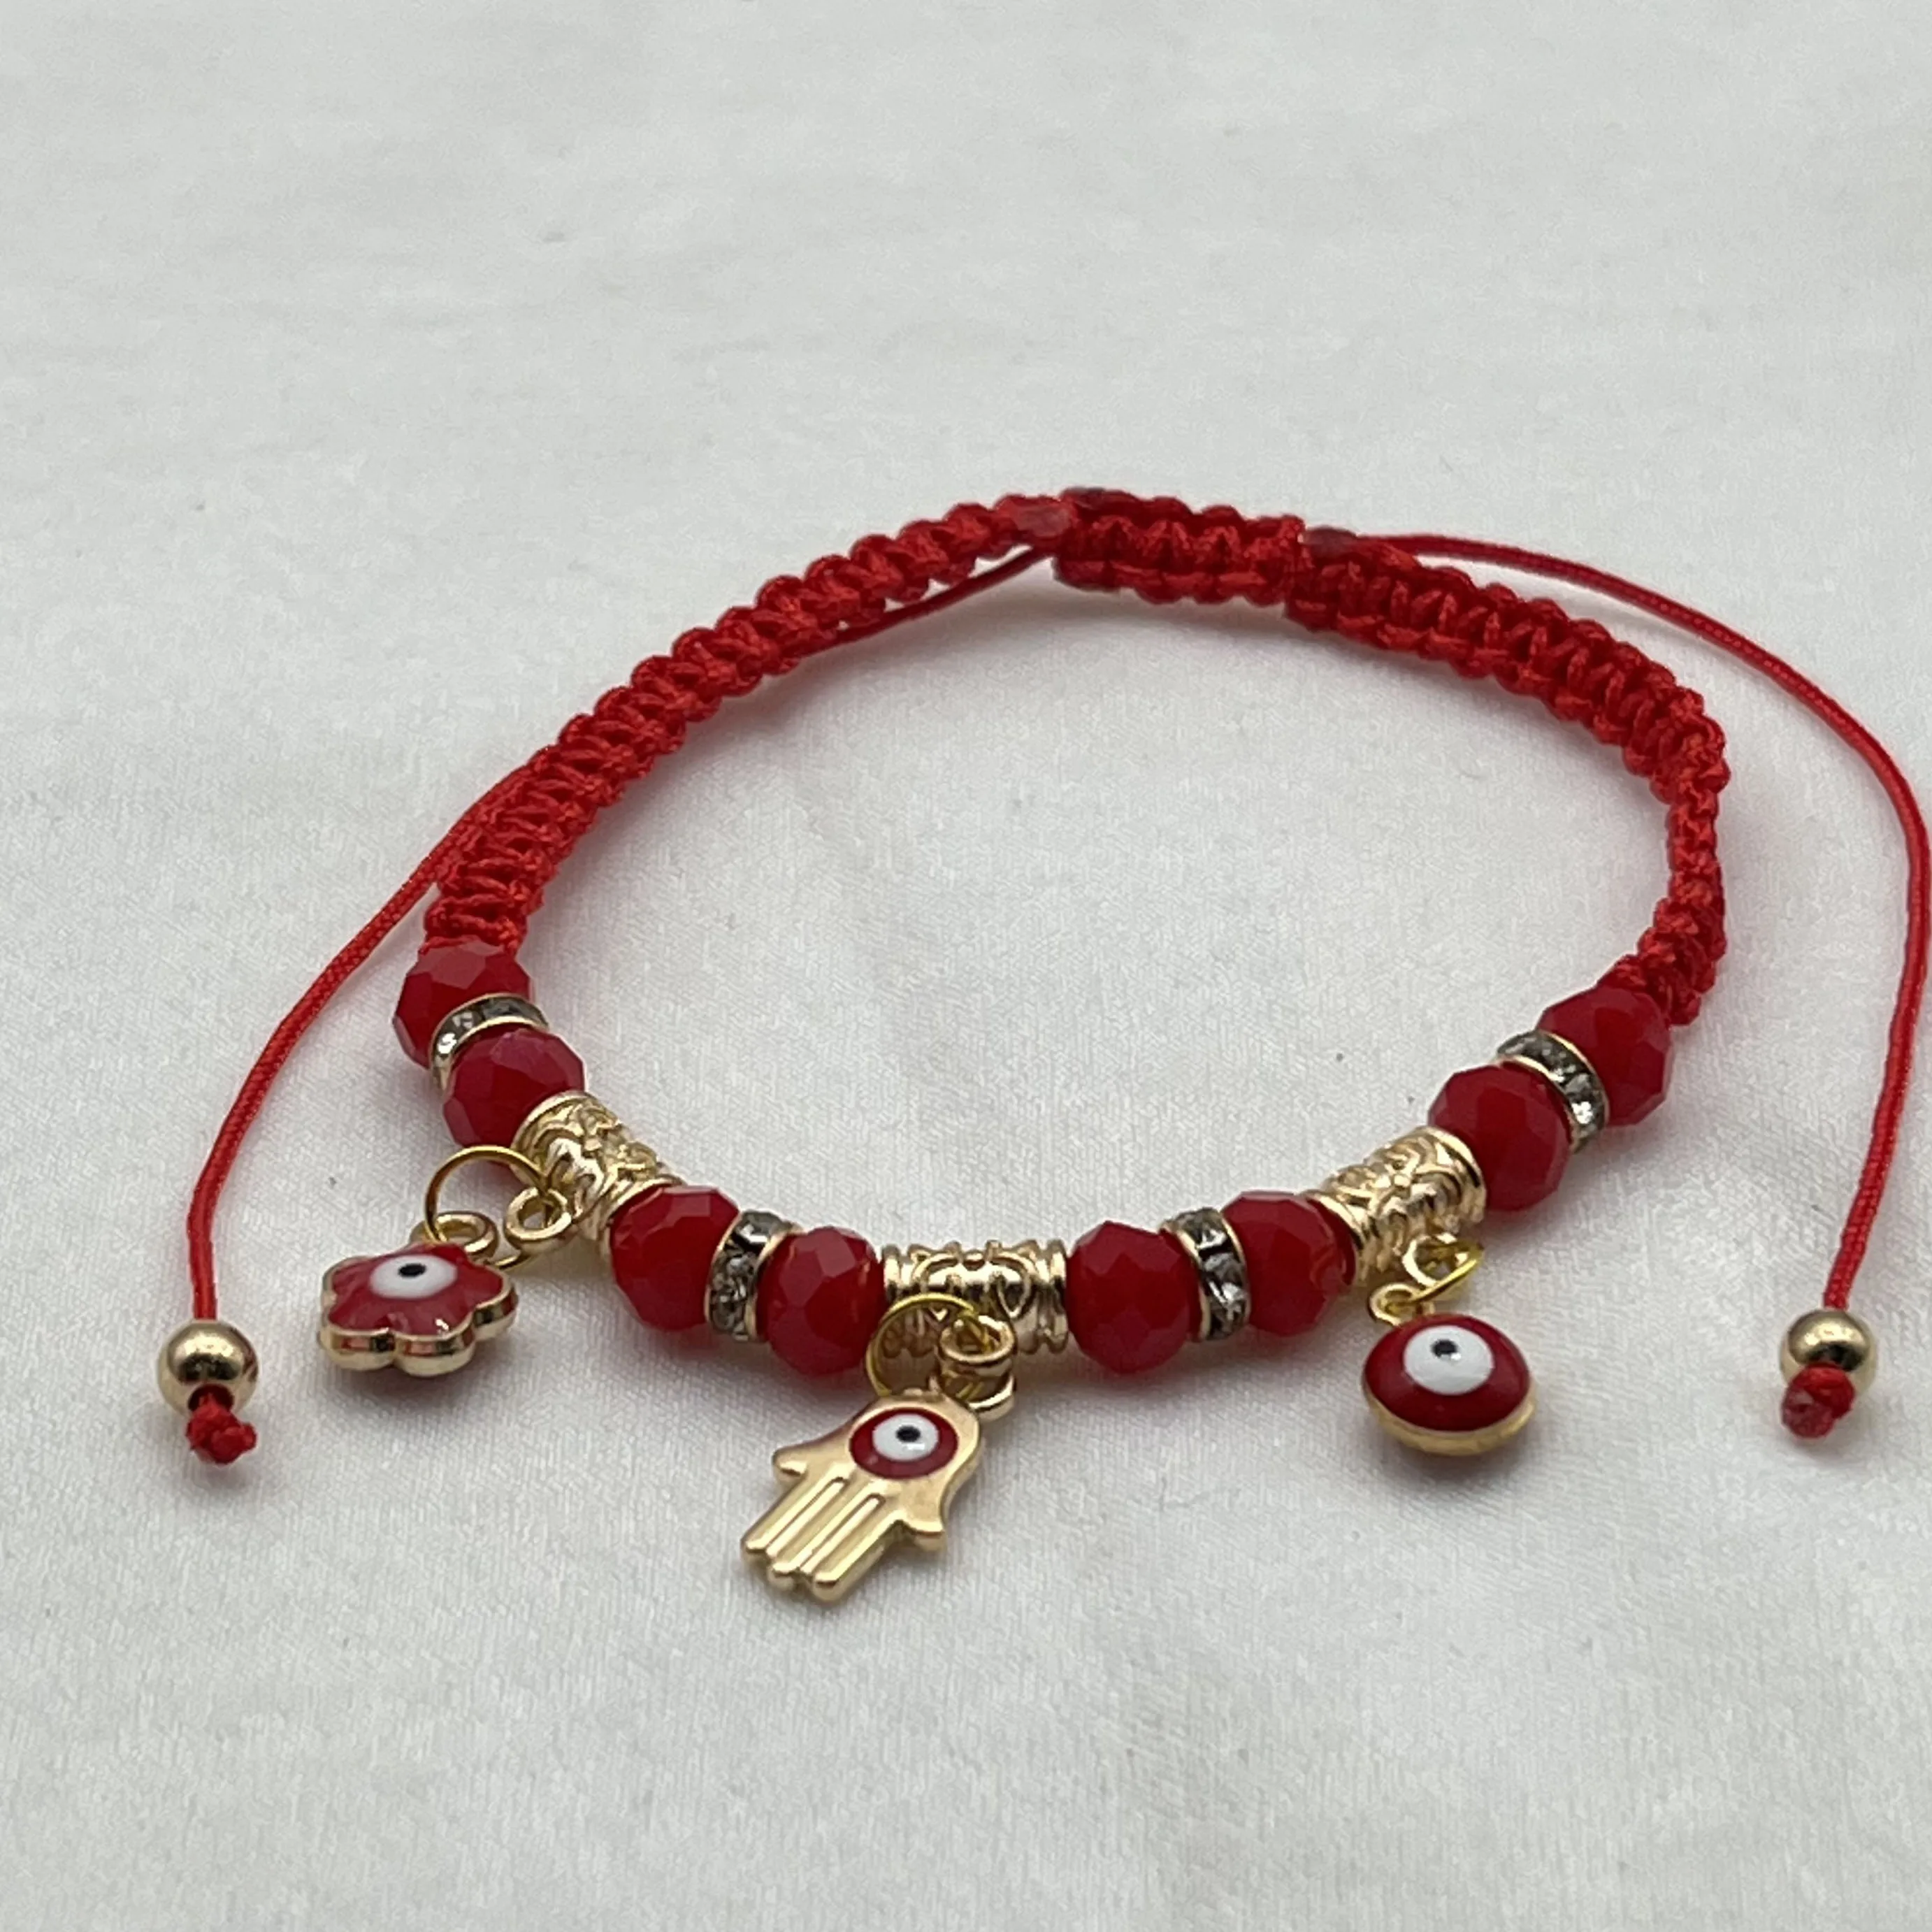 Red and Gold evil eyeflower bracelets or women as jewelry gift for her friendship Bracelet ojo bracelet  Turkish evil eye